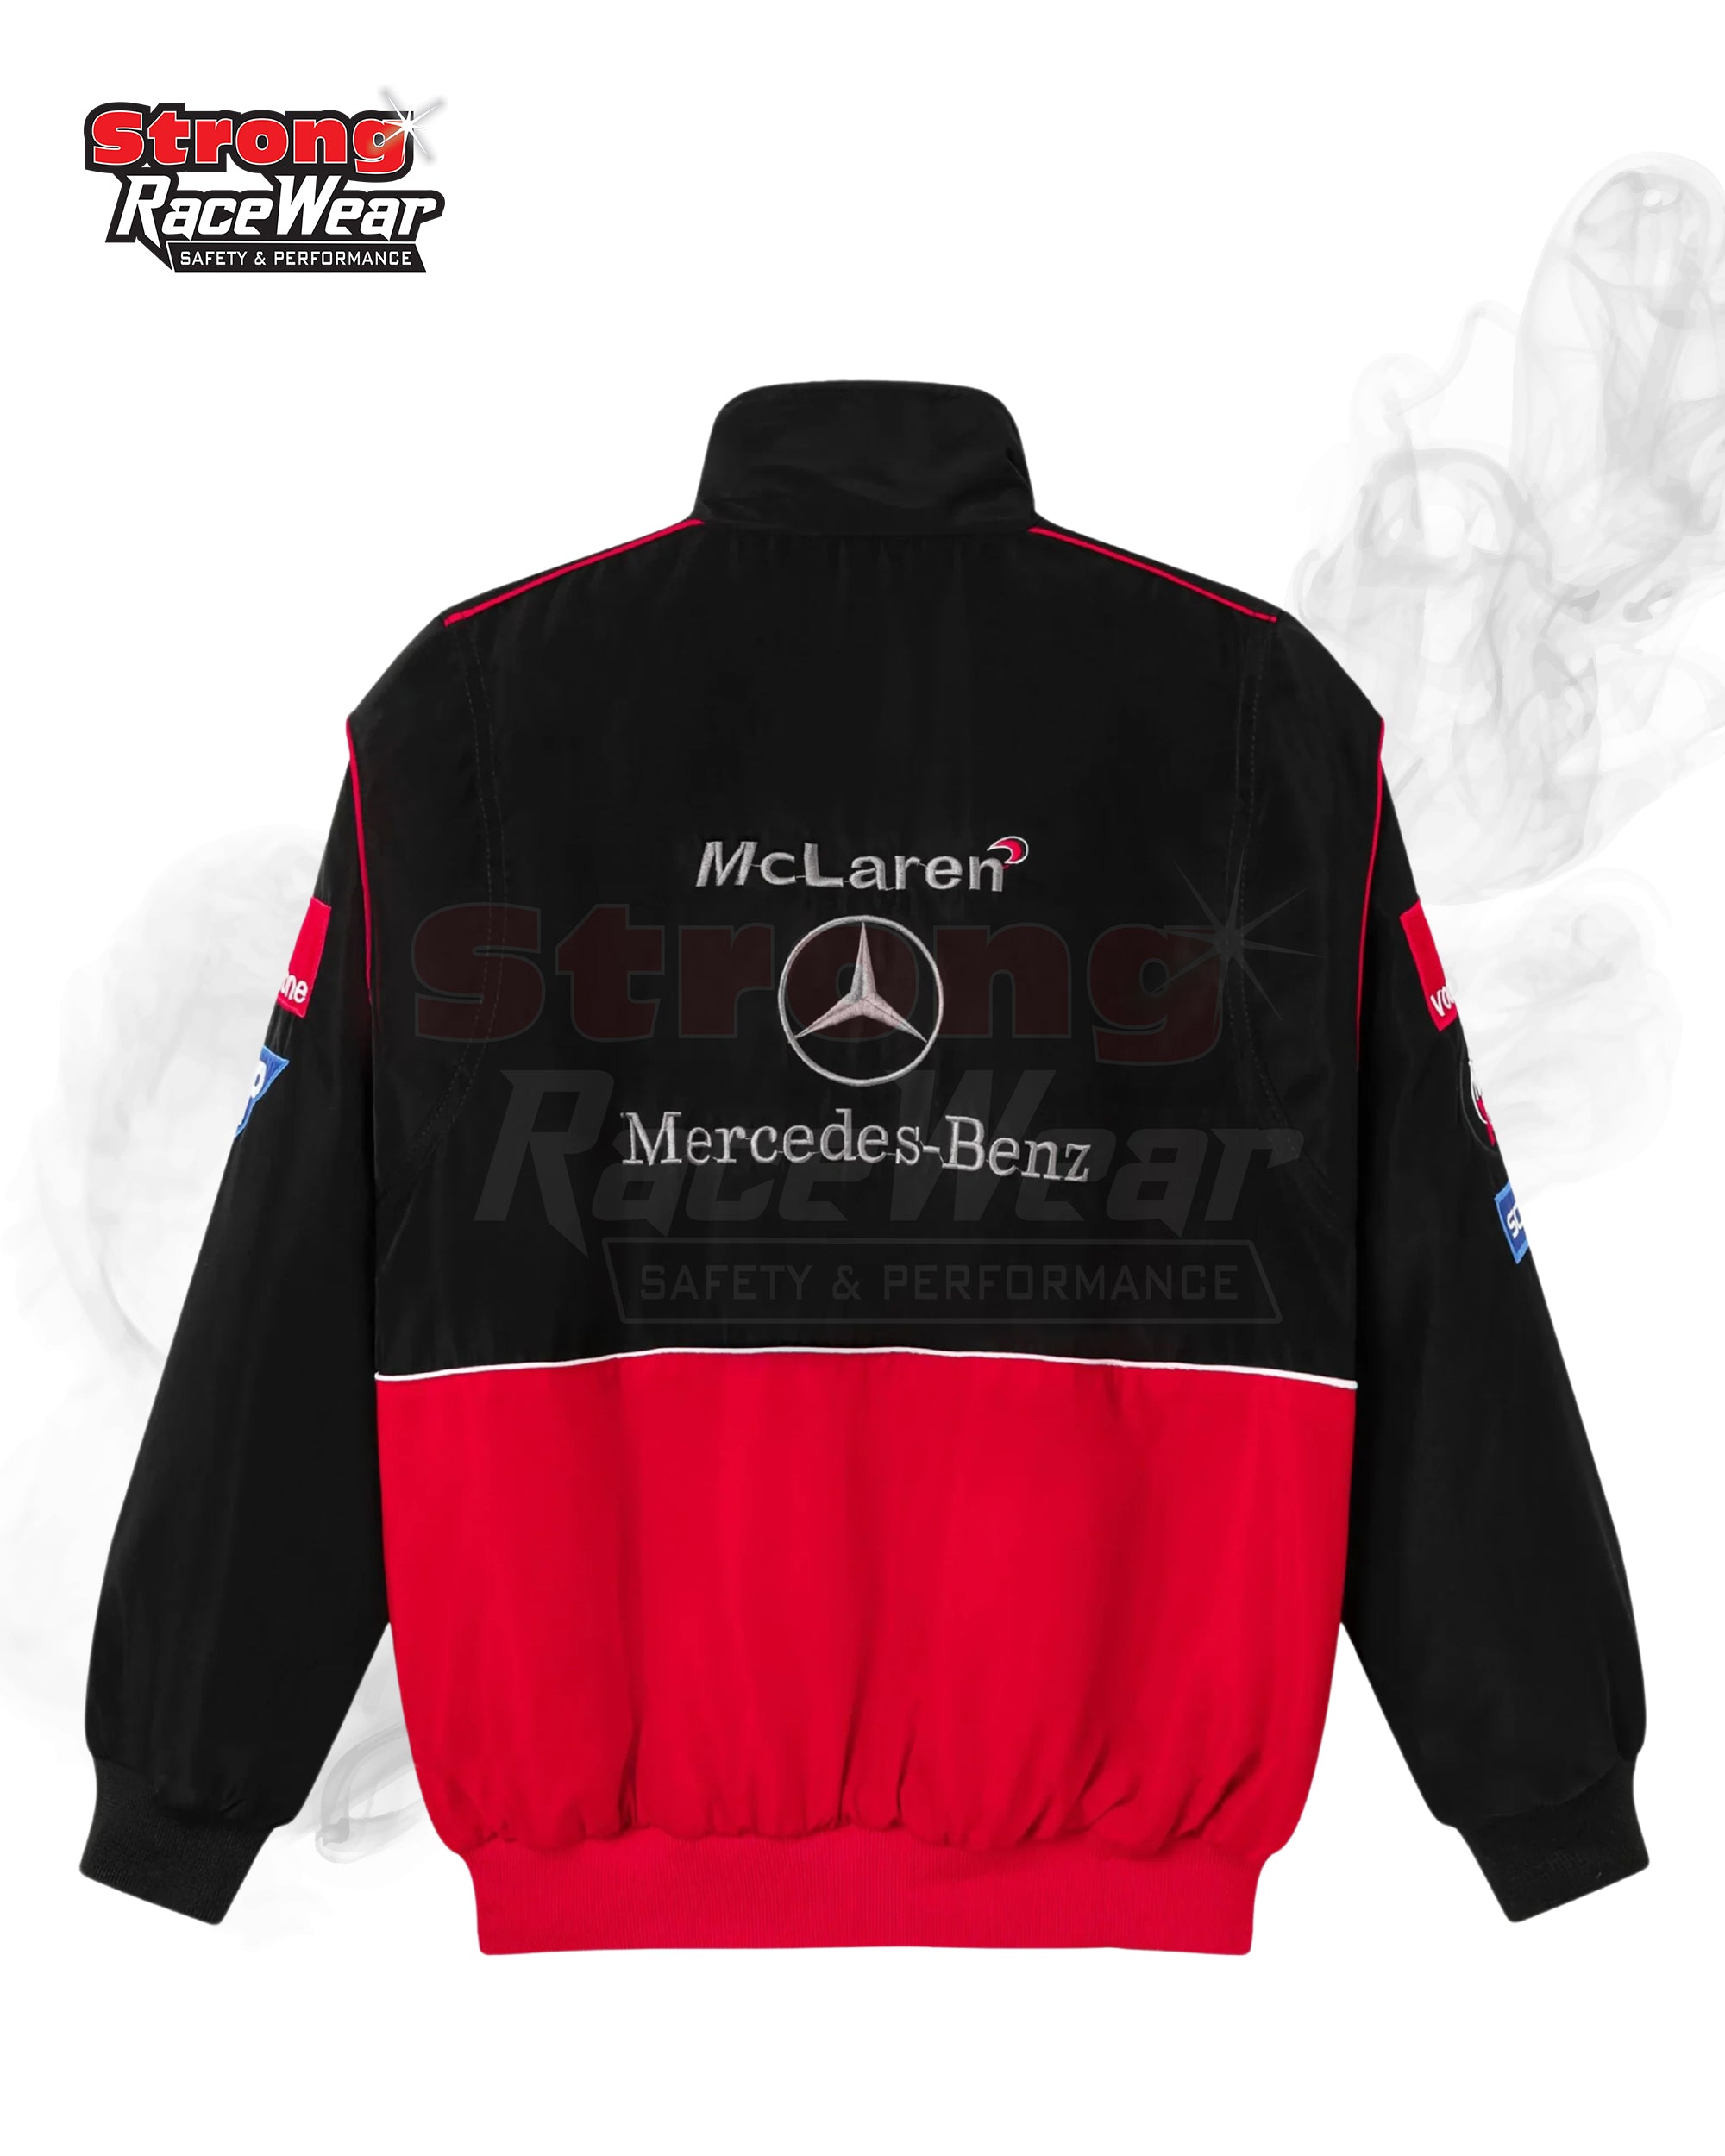 McLaren Benz Vantage Jacket